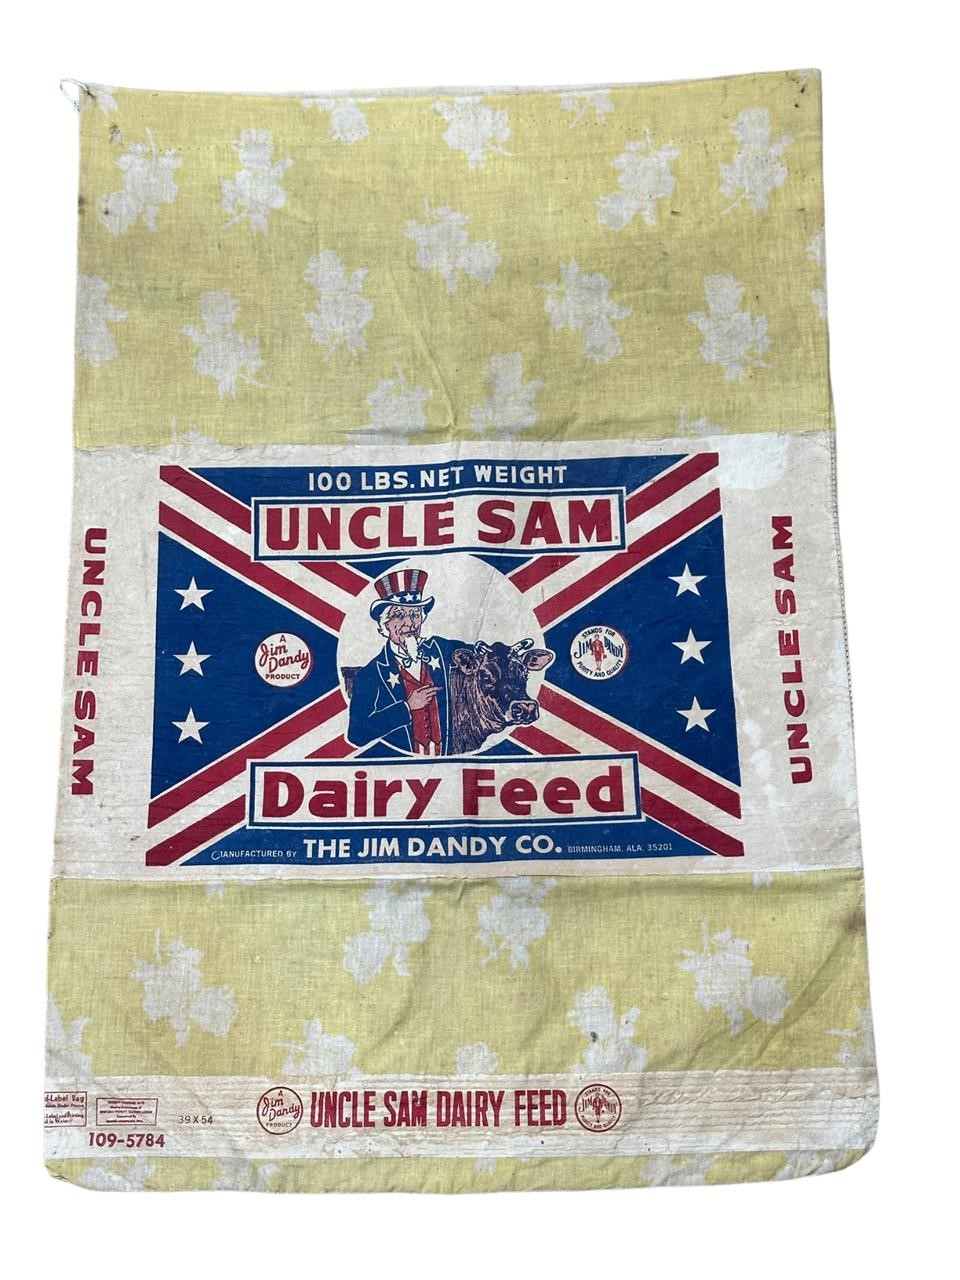 Vintage Jim Dandy Co. Uncle Sam Dairy Feed Sack